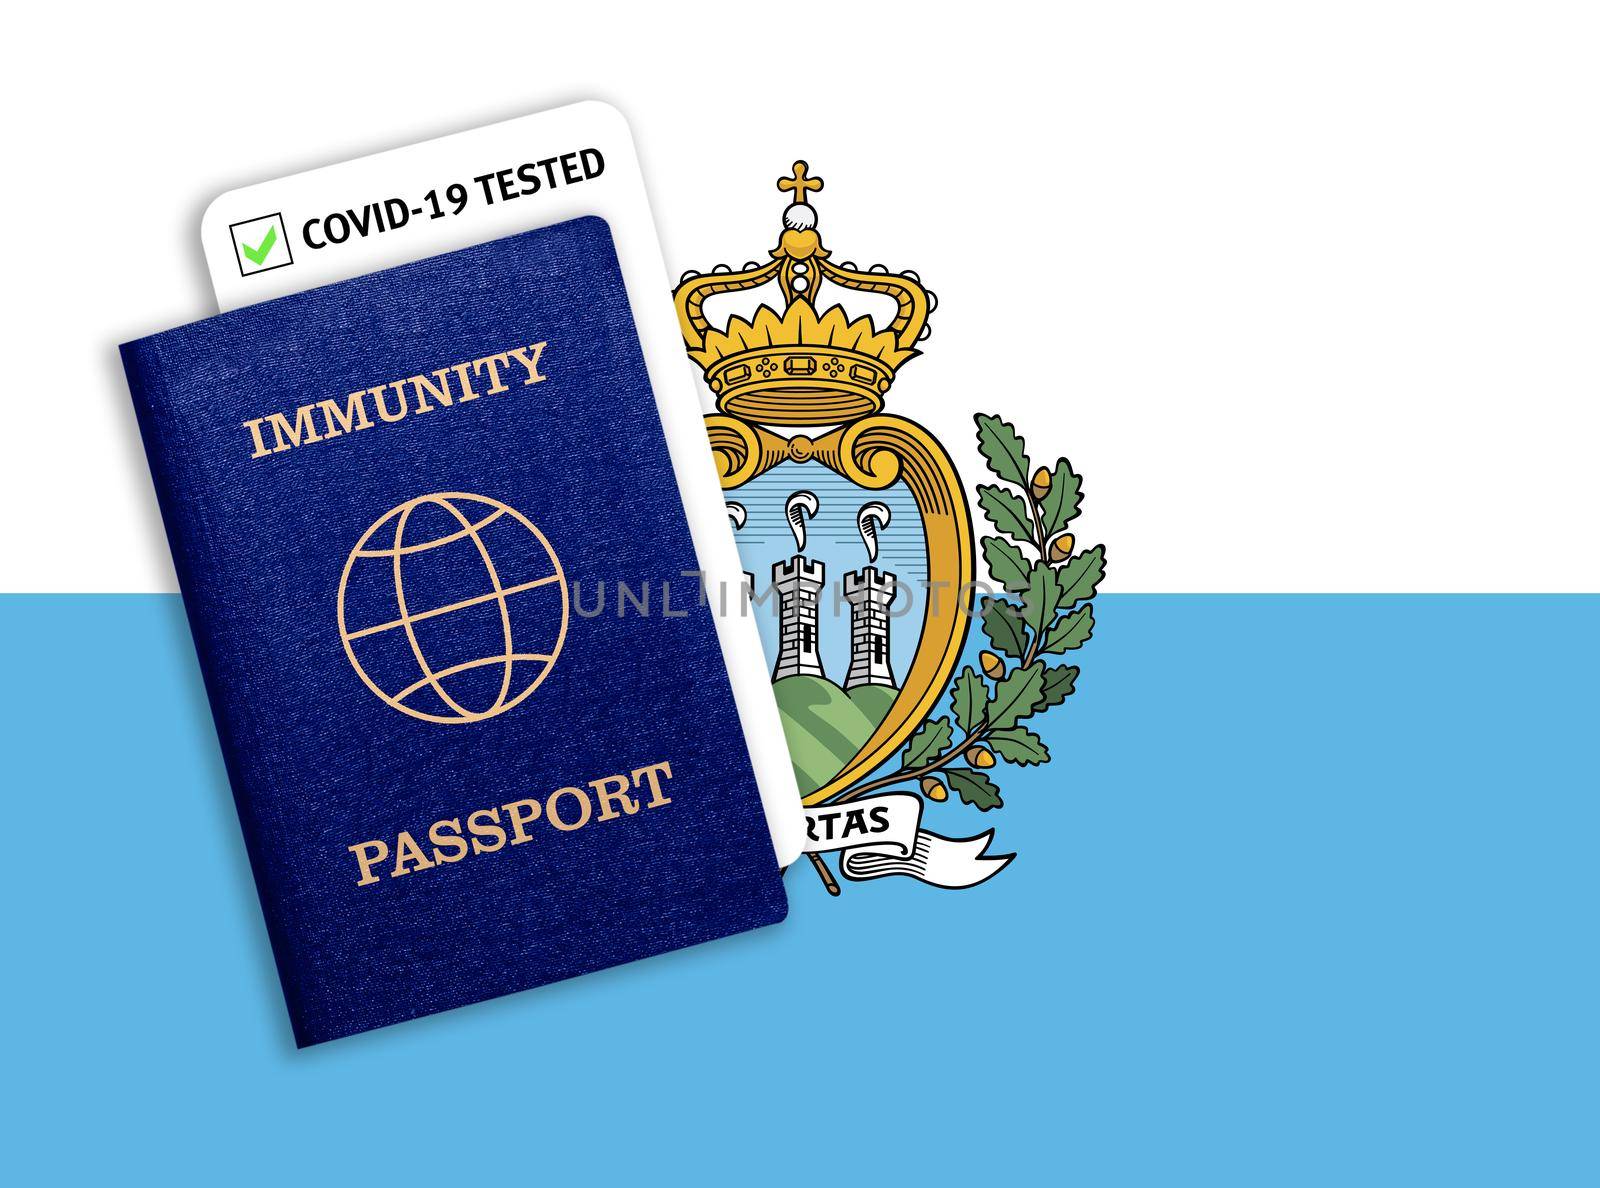 Immunity passport and coronavirus test with flag of San Marino by galinasharapova